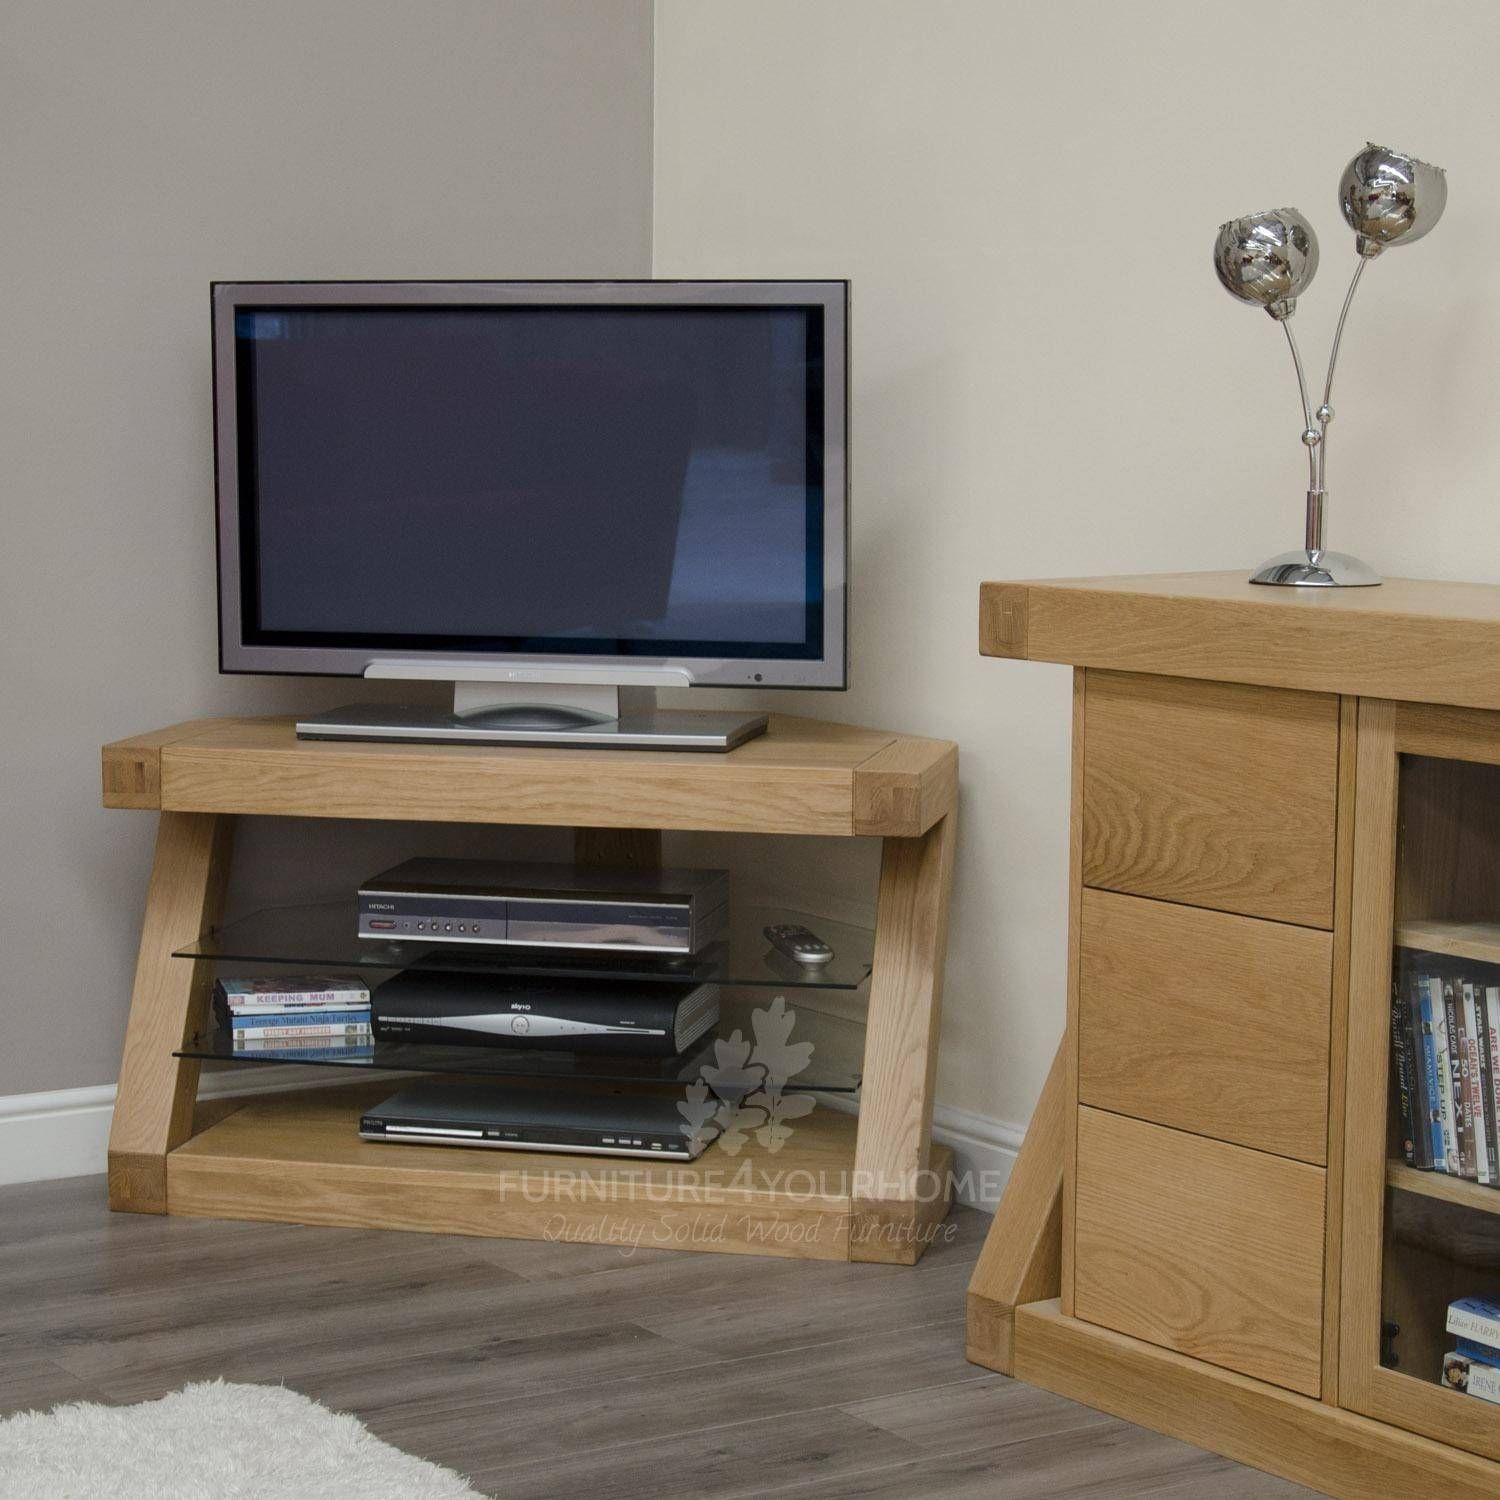 Z Solid Oak Designer Corner Tv Unit | Furniture4yourhome In Light Oak Corner Tv Cabinets (View 15 of 15)